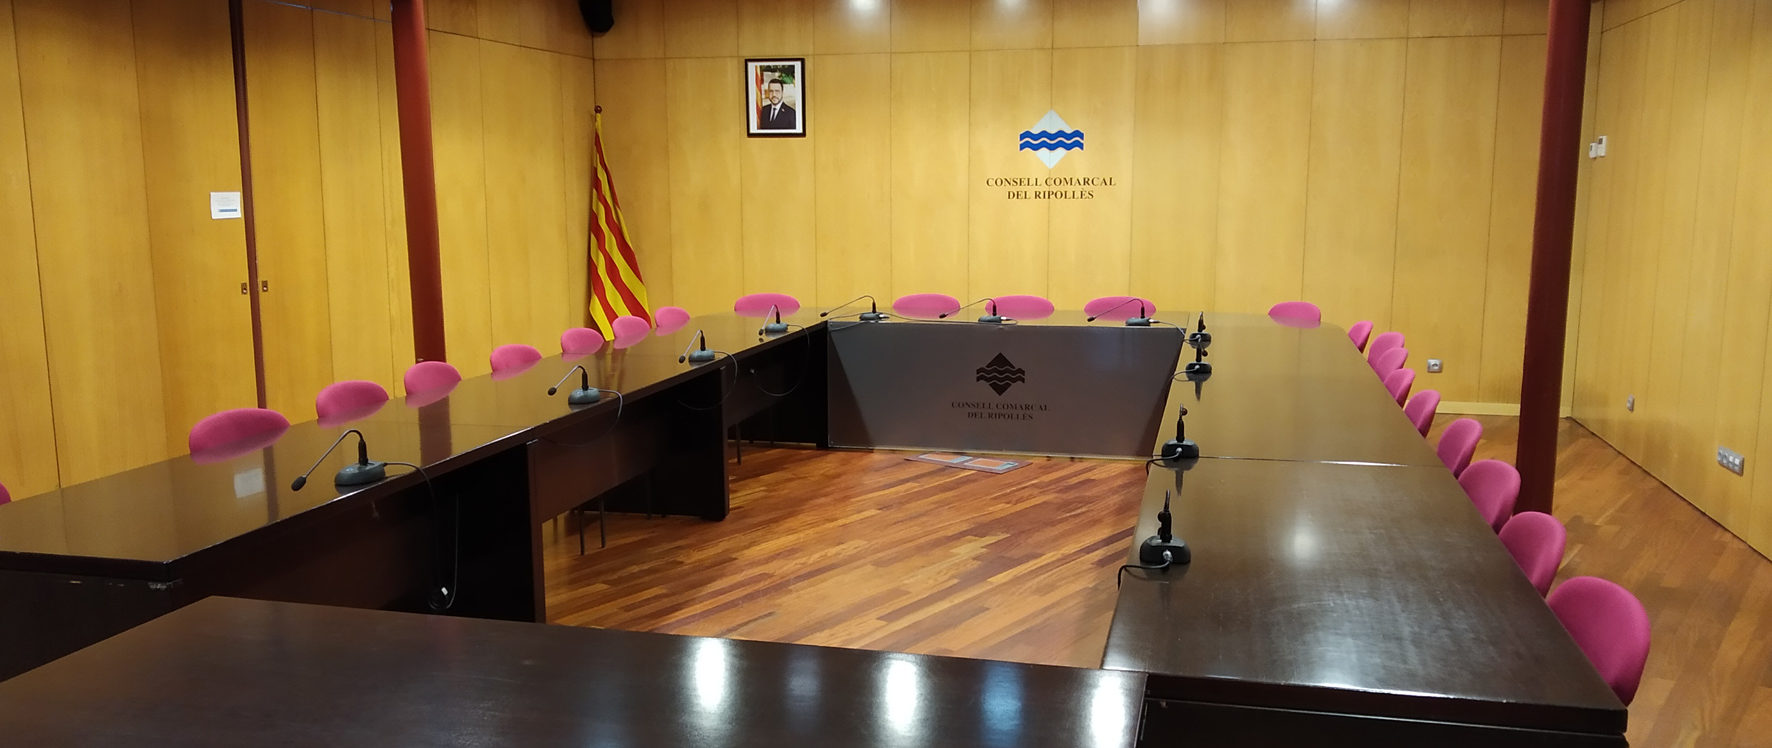 Imatge de la sala de plens del Consell Comarcal del Ripollès buida